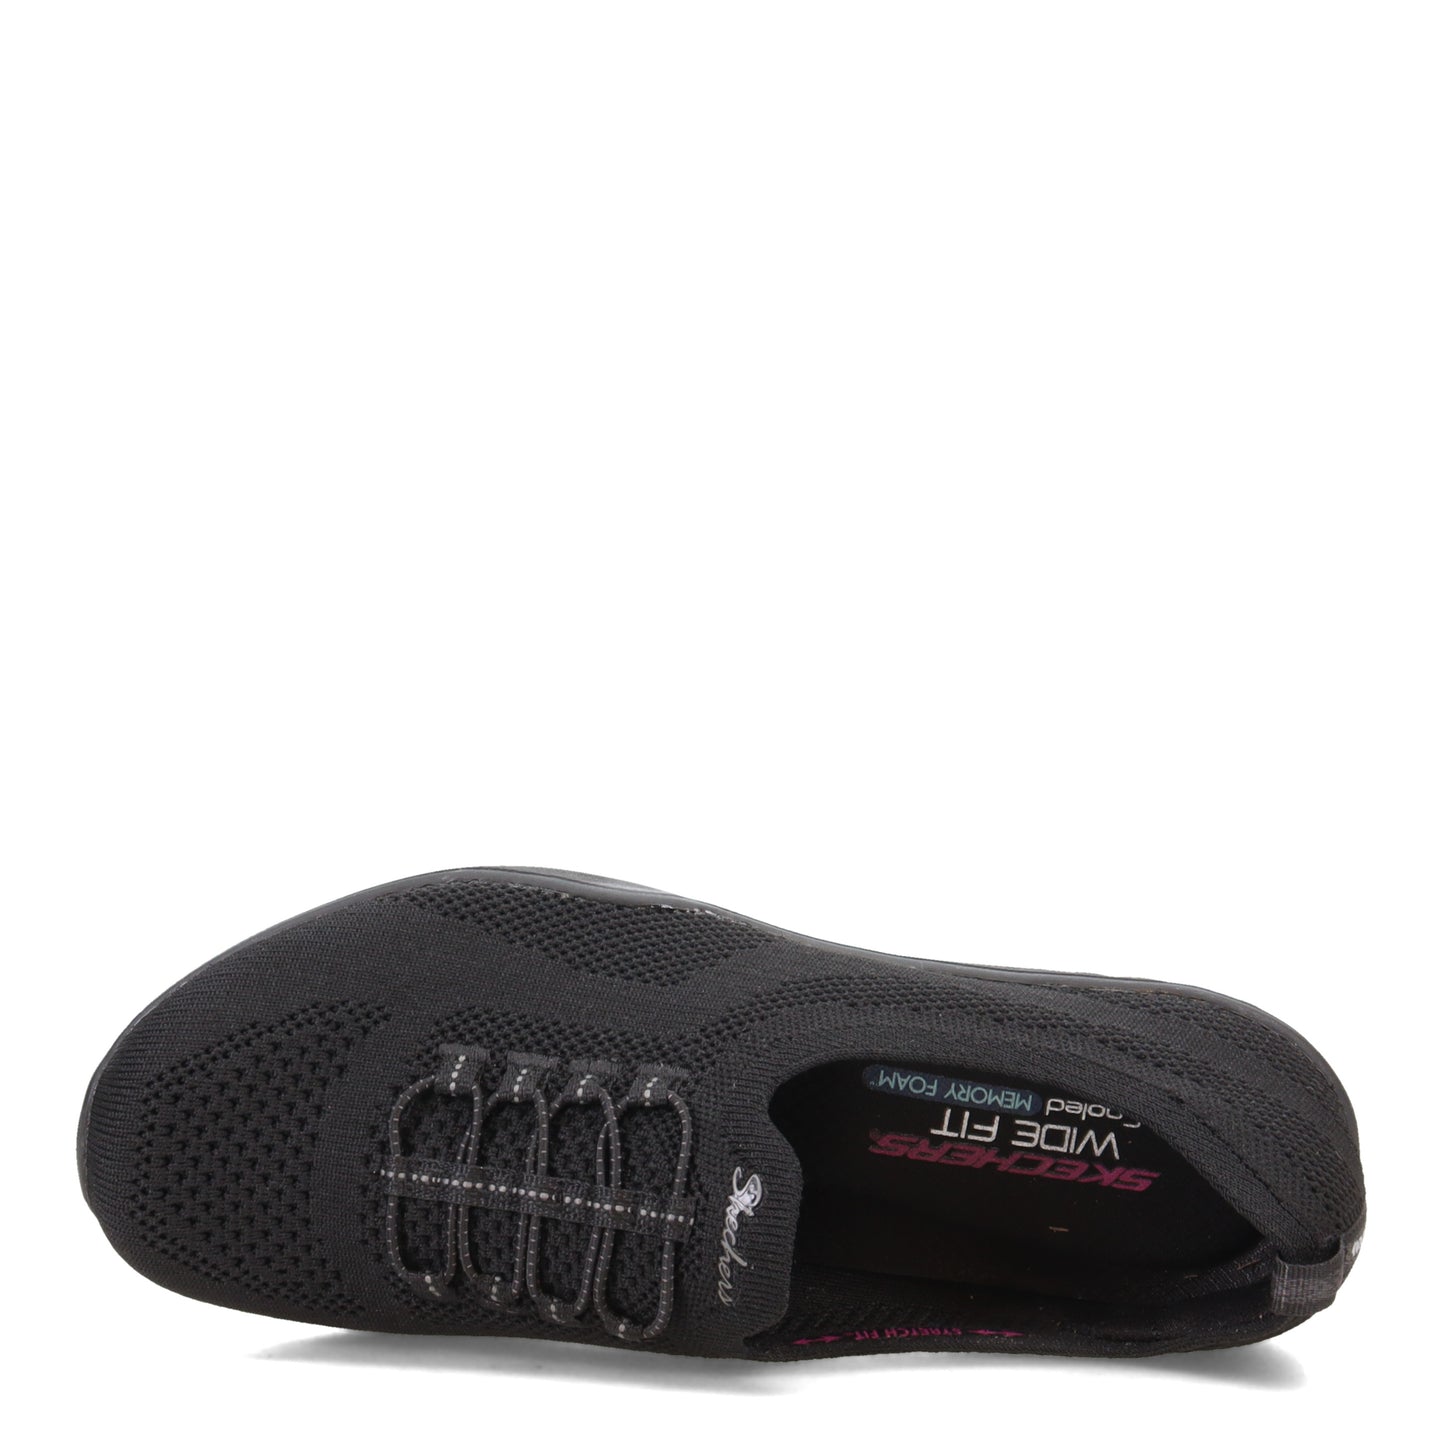 Peltz Shoes  Women's Skechers Newbury St - Every Angle Sneaker - Wide Width BLACK 100033W-BBK